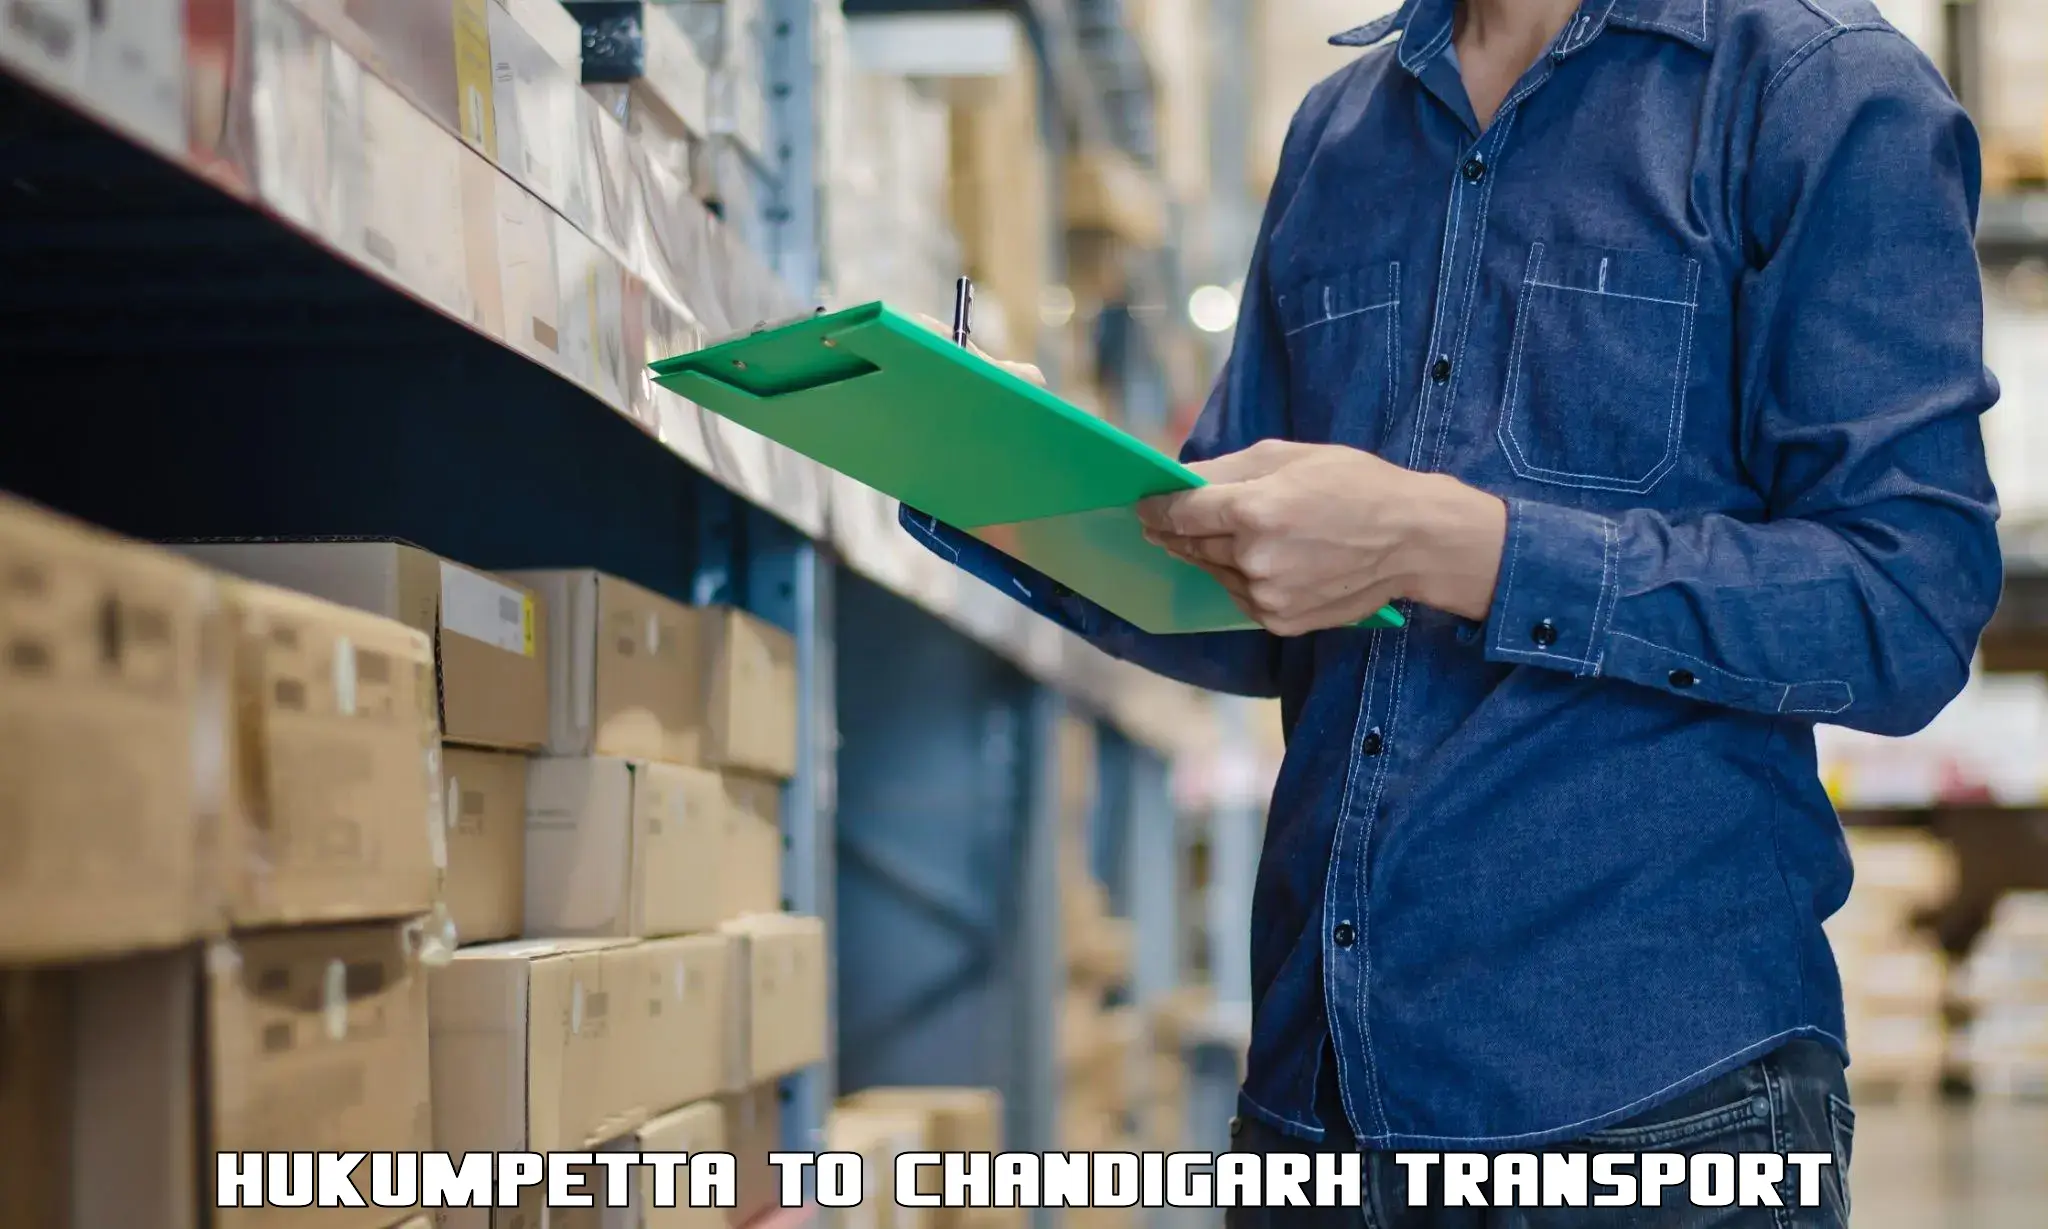 Two wheeler parcel service Hukumpetta to Chandigarh